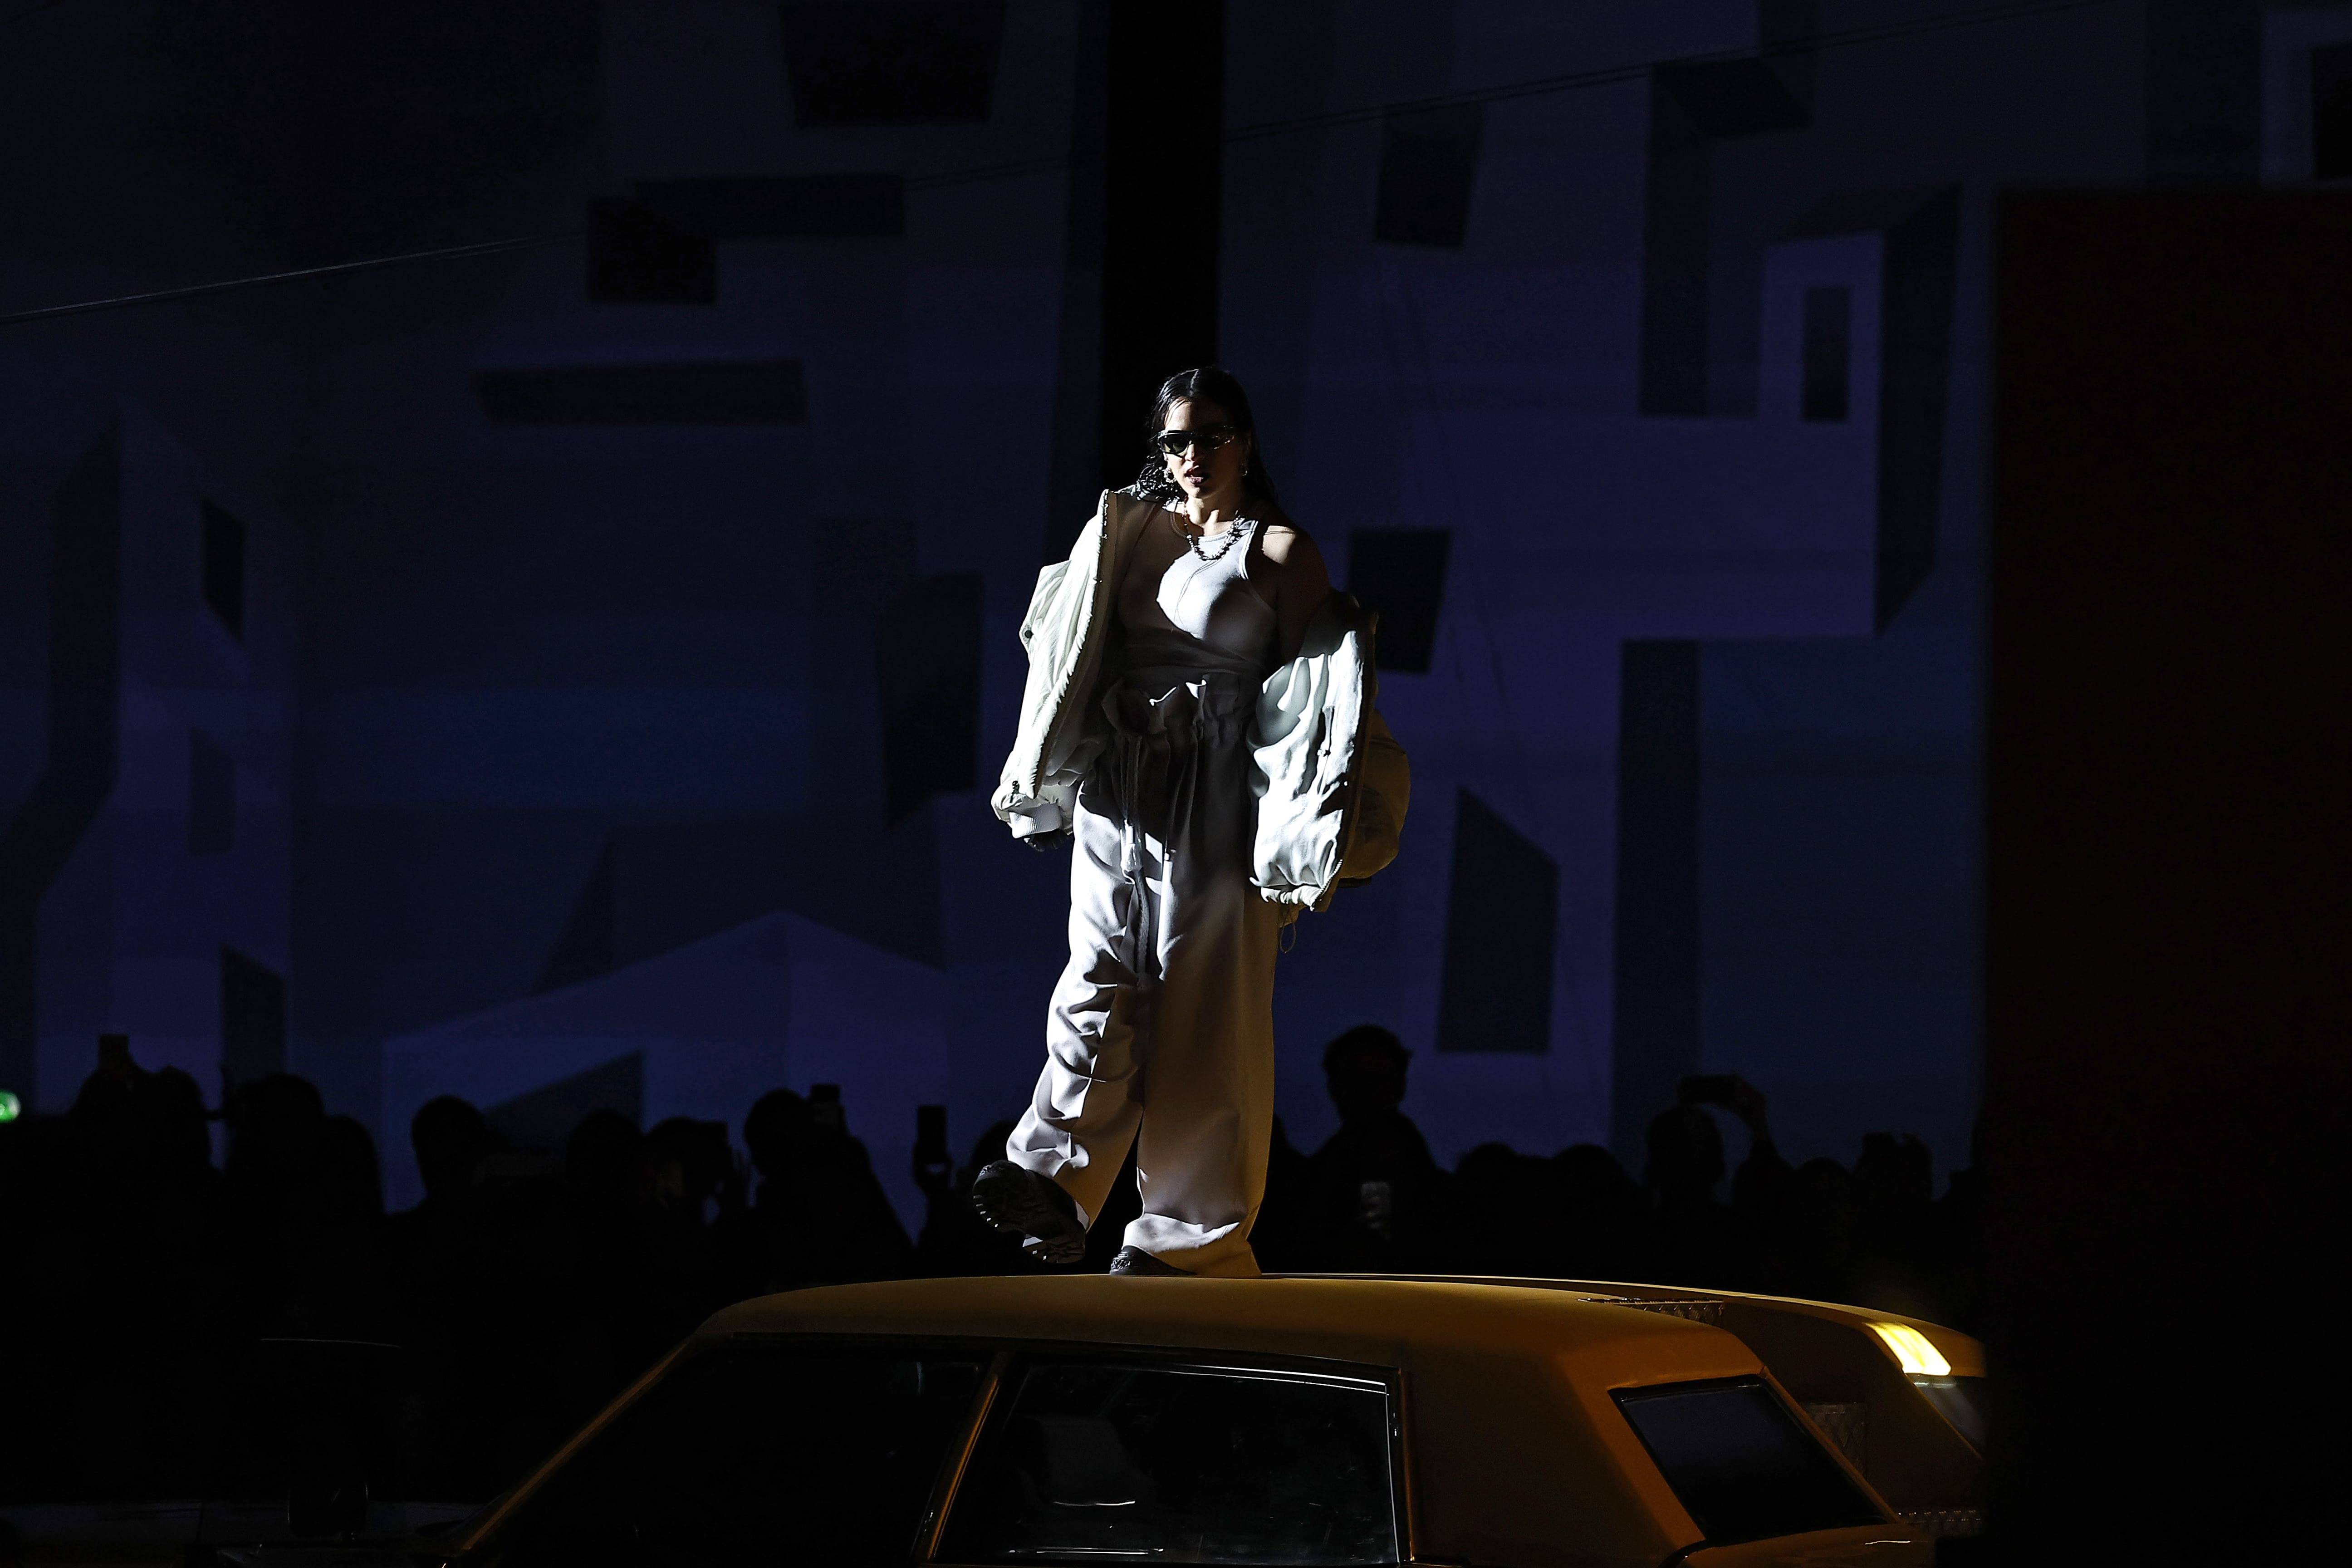 Un défilé Louis Vuitton homme avec Rosalía, KidSuper et Michel Gondry